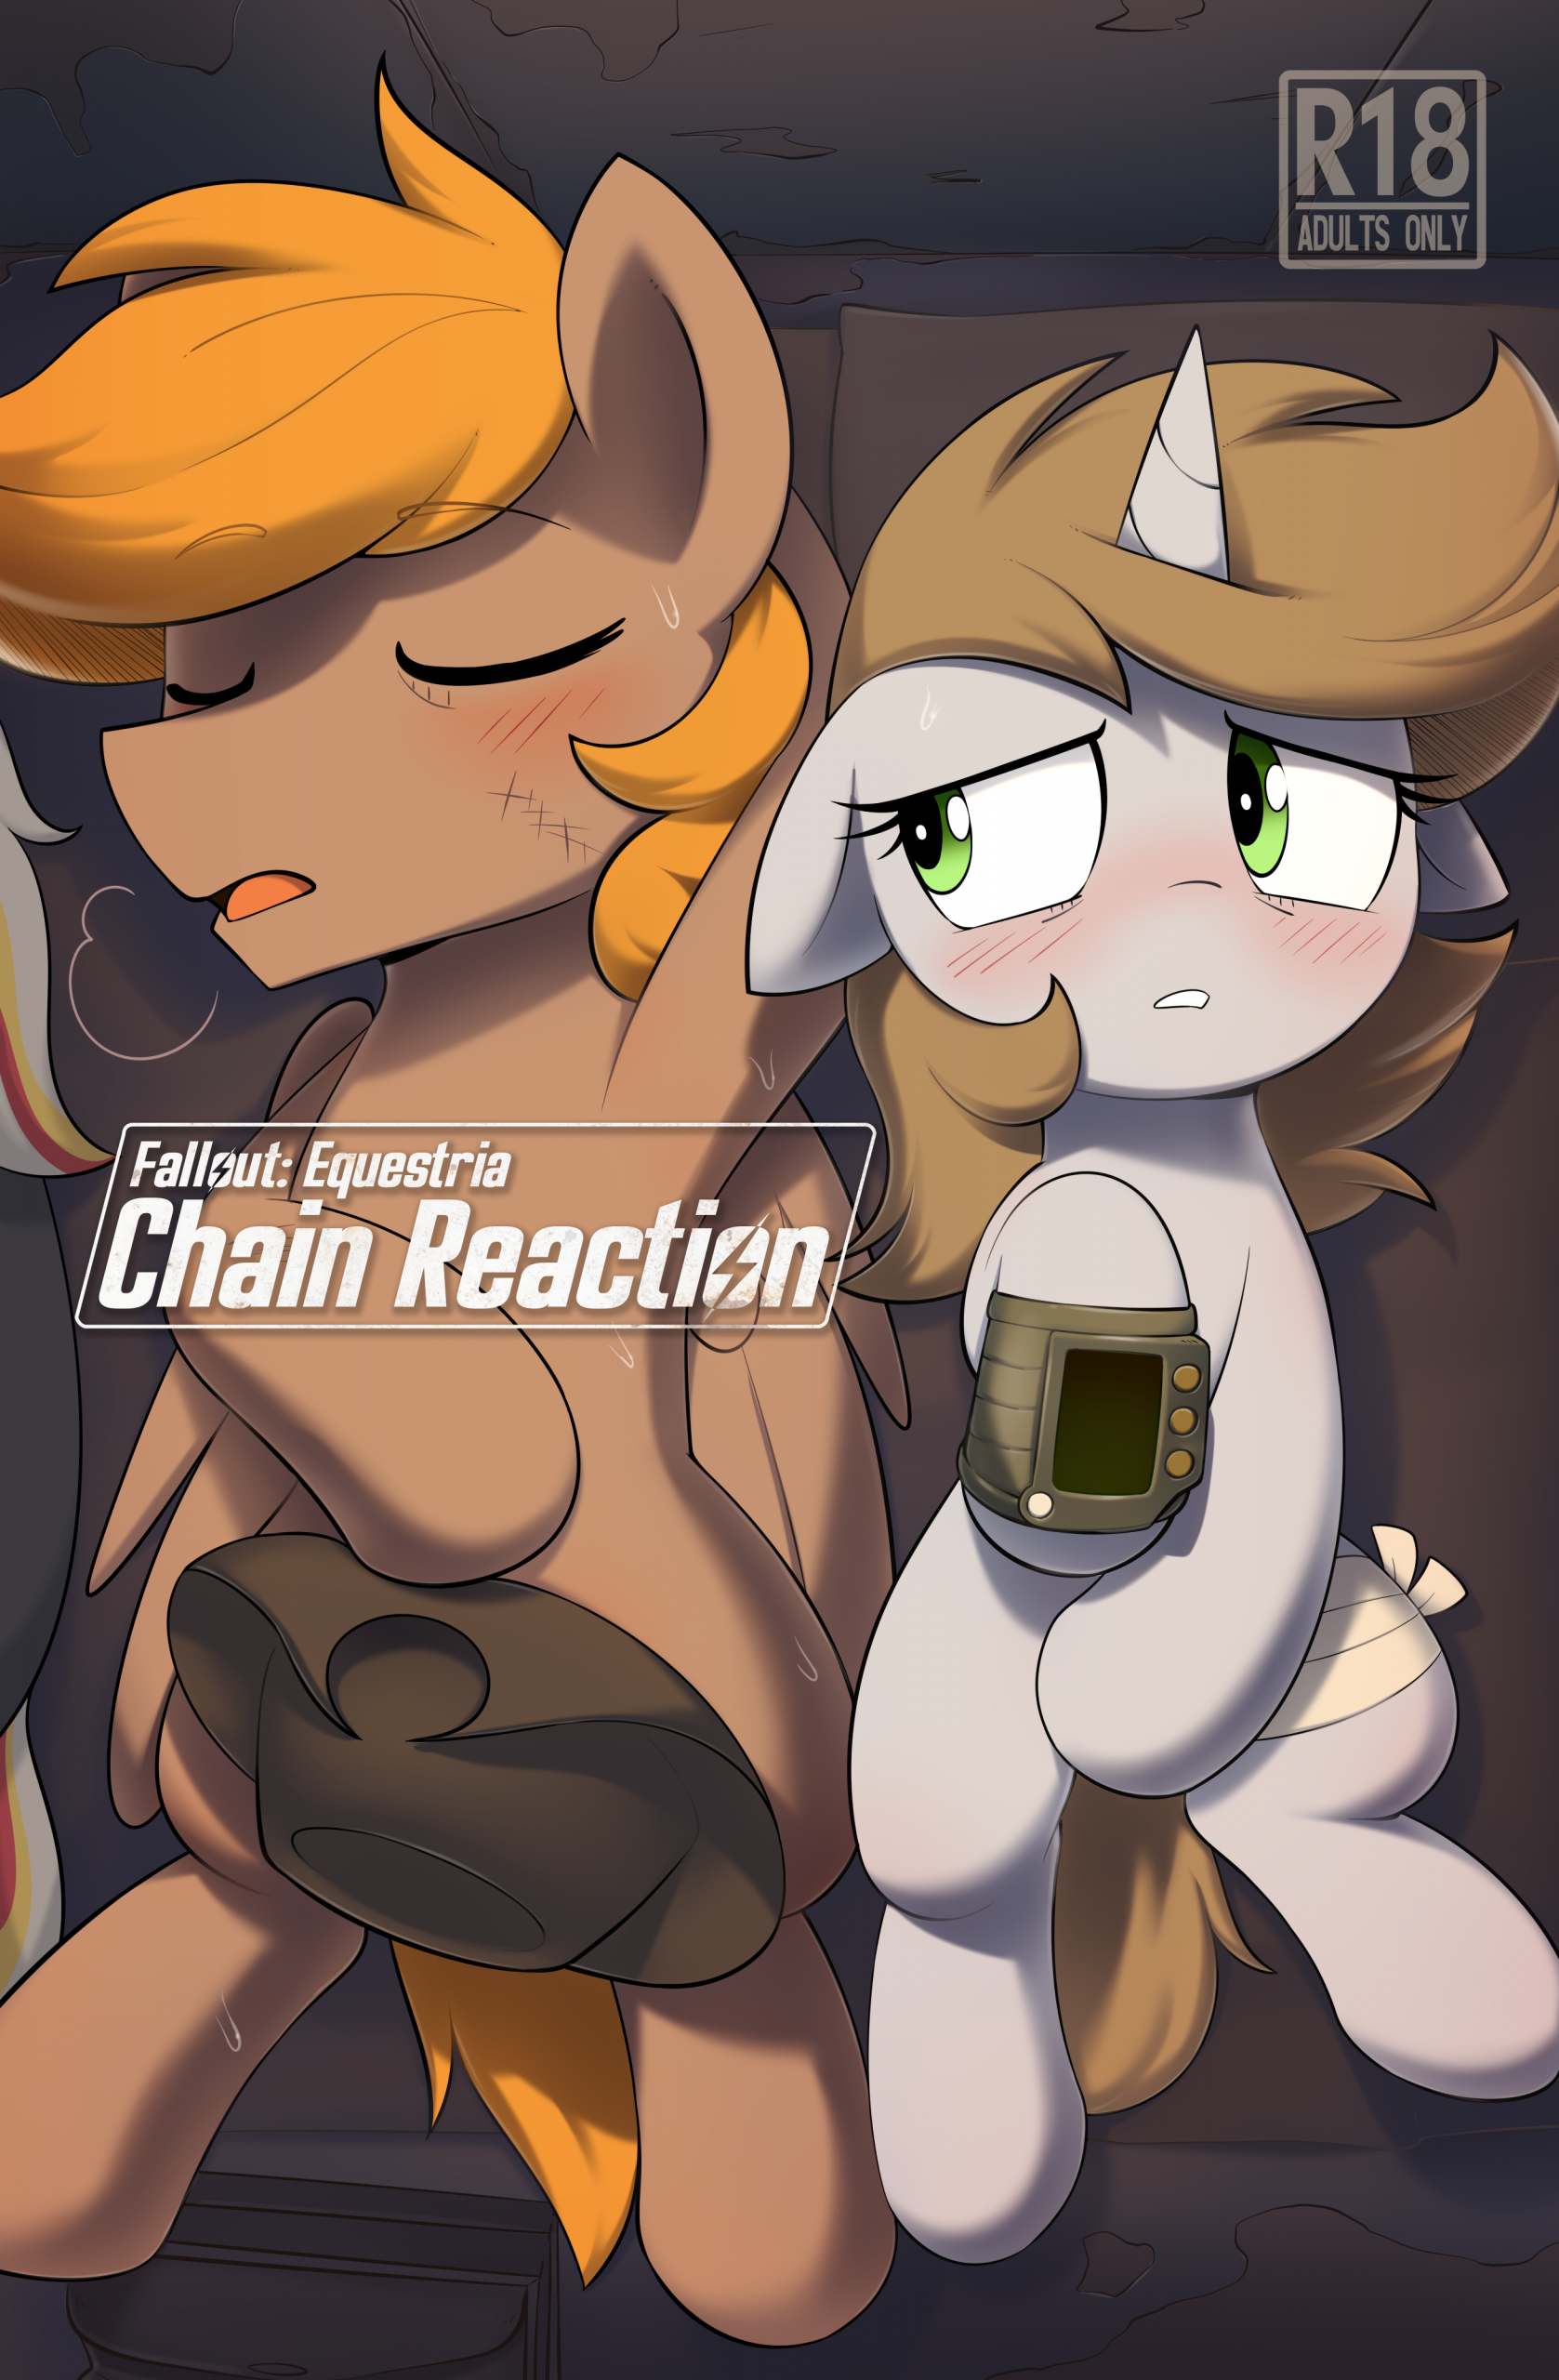 Fallout: Equestria - Chain Reaction porn comic picture 1